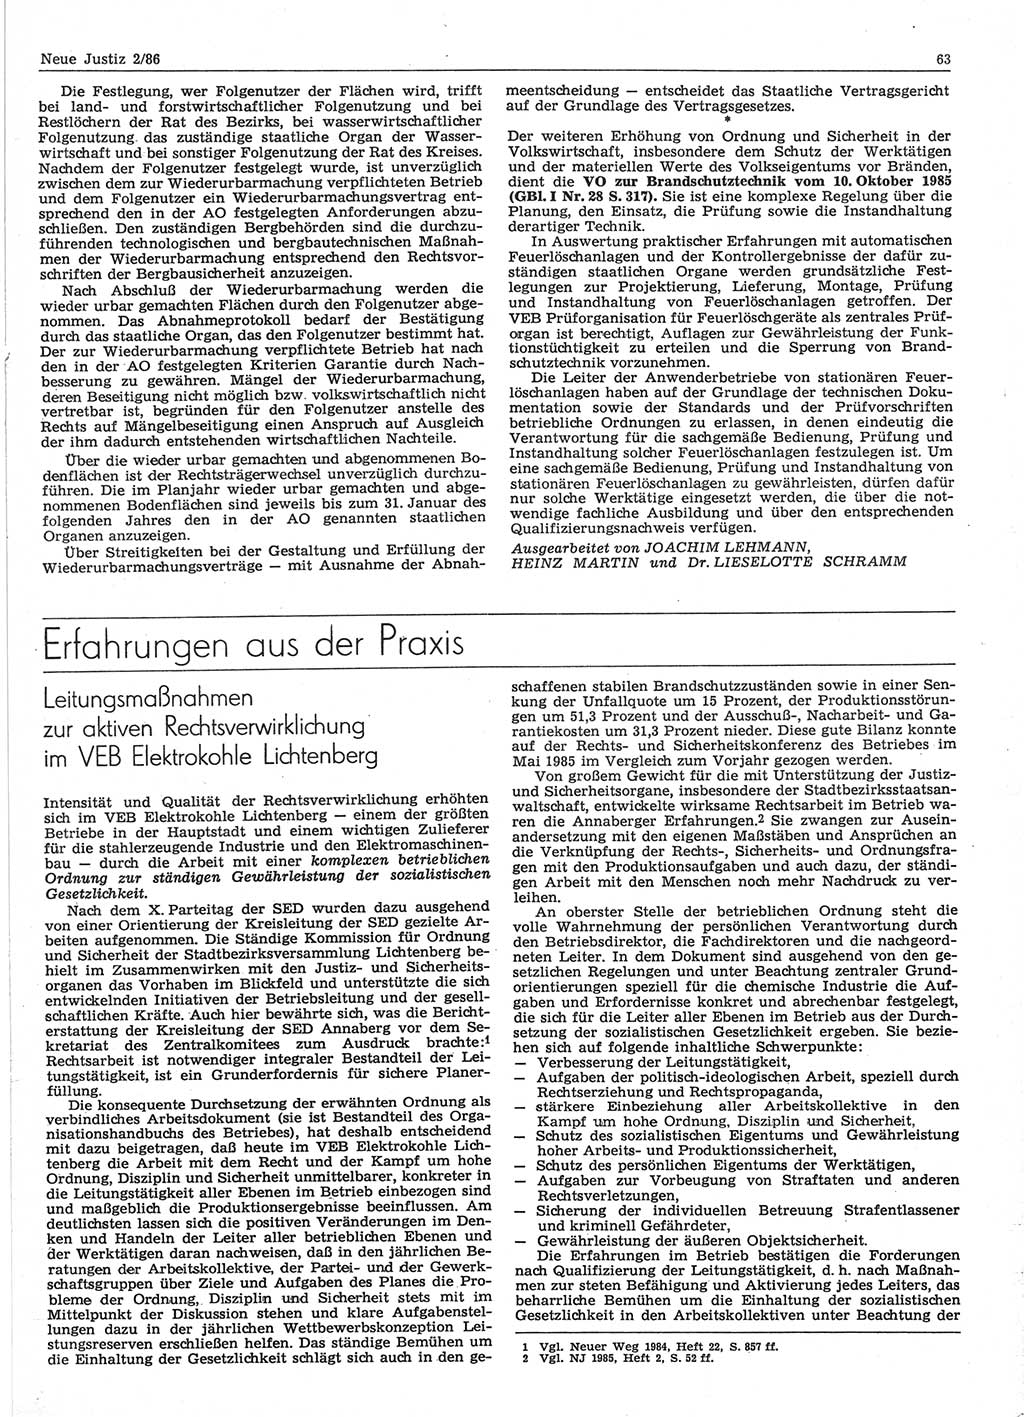 Neue Justiz (NJ), Zeitschrift für sozialistisches Recht und Gesetzlichkeit [Deutsche Demokratische Republik (DDR)], 40. Jahrgang 1986, Seite 63 (NJ DDR 1986, S. 63)